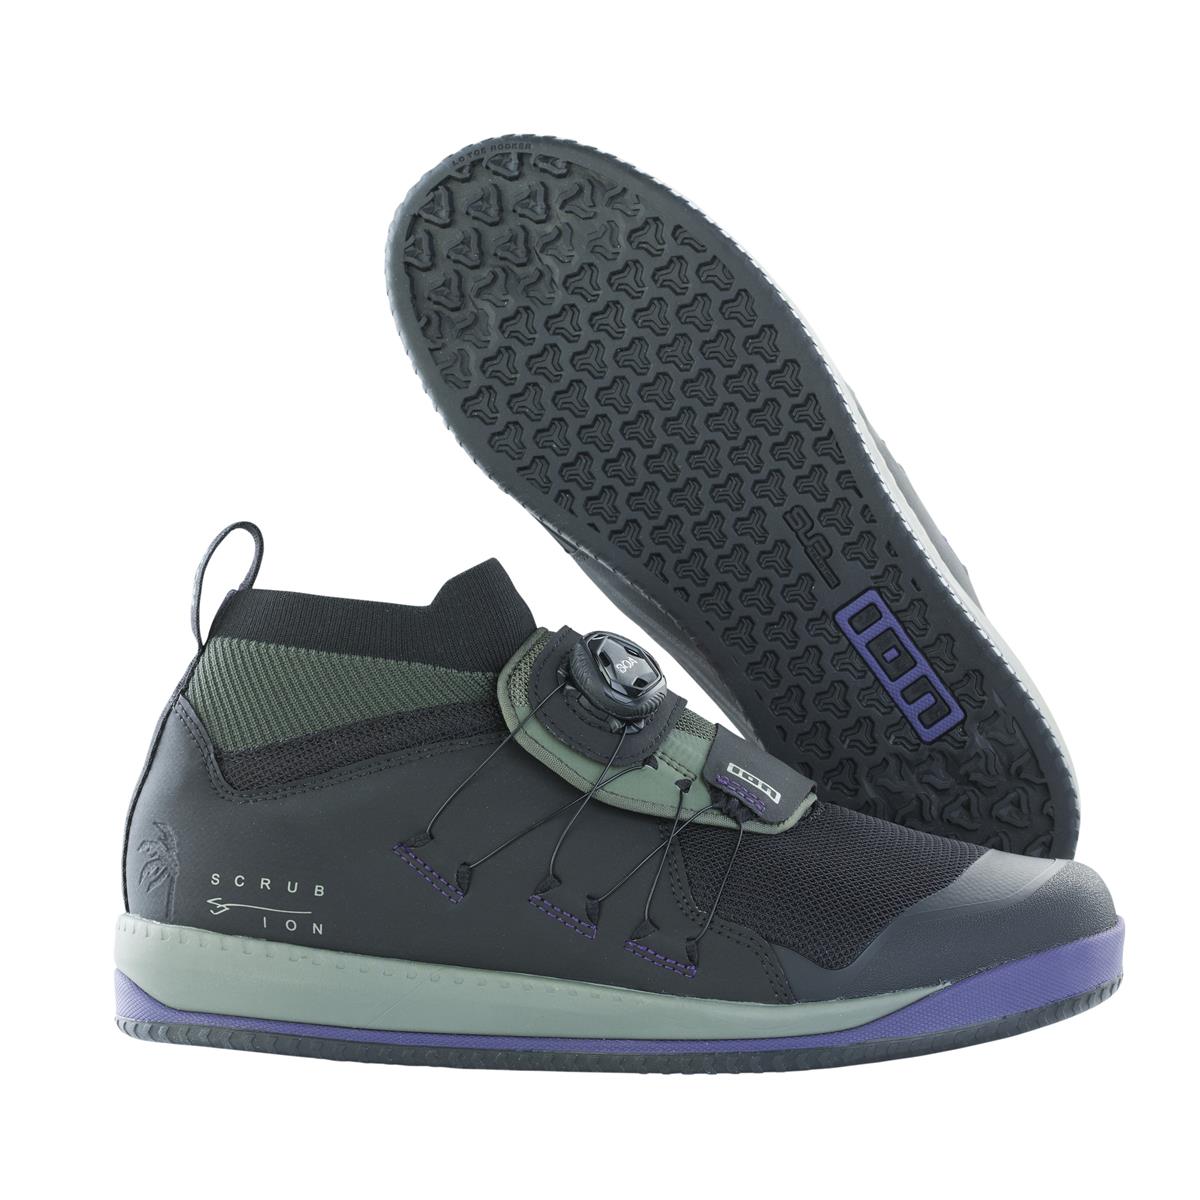 ION Chaussures VTT Scrub Select Boa Noir